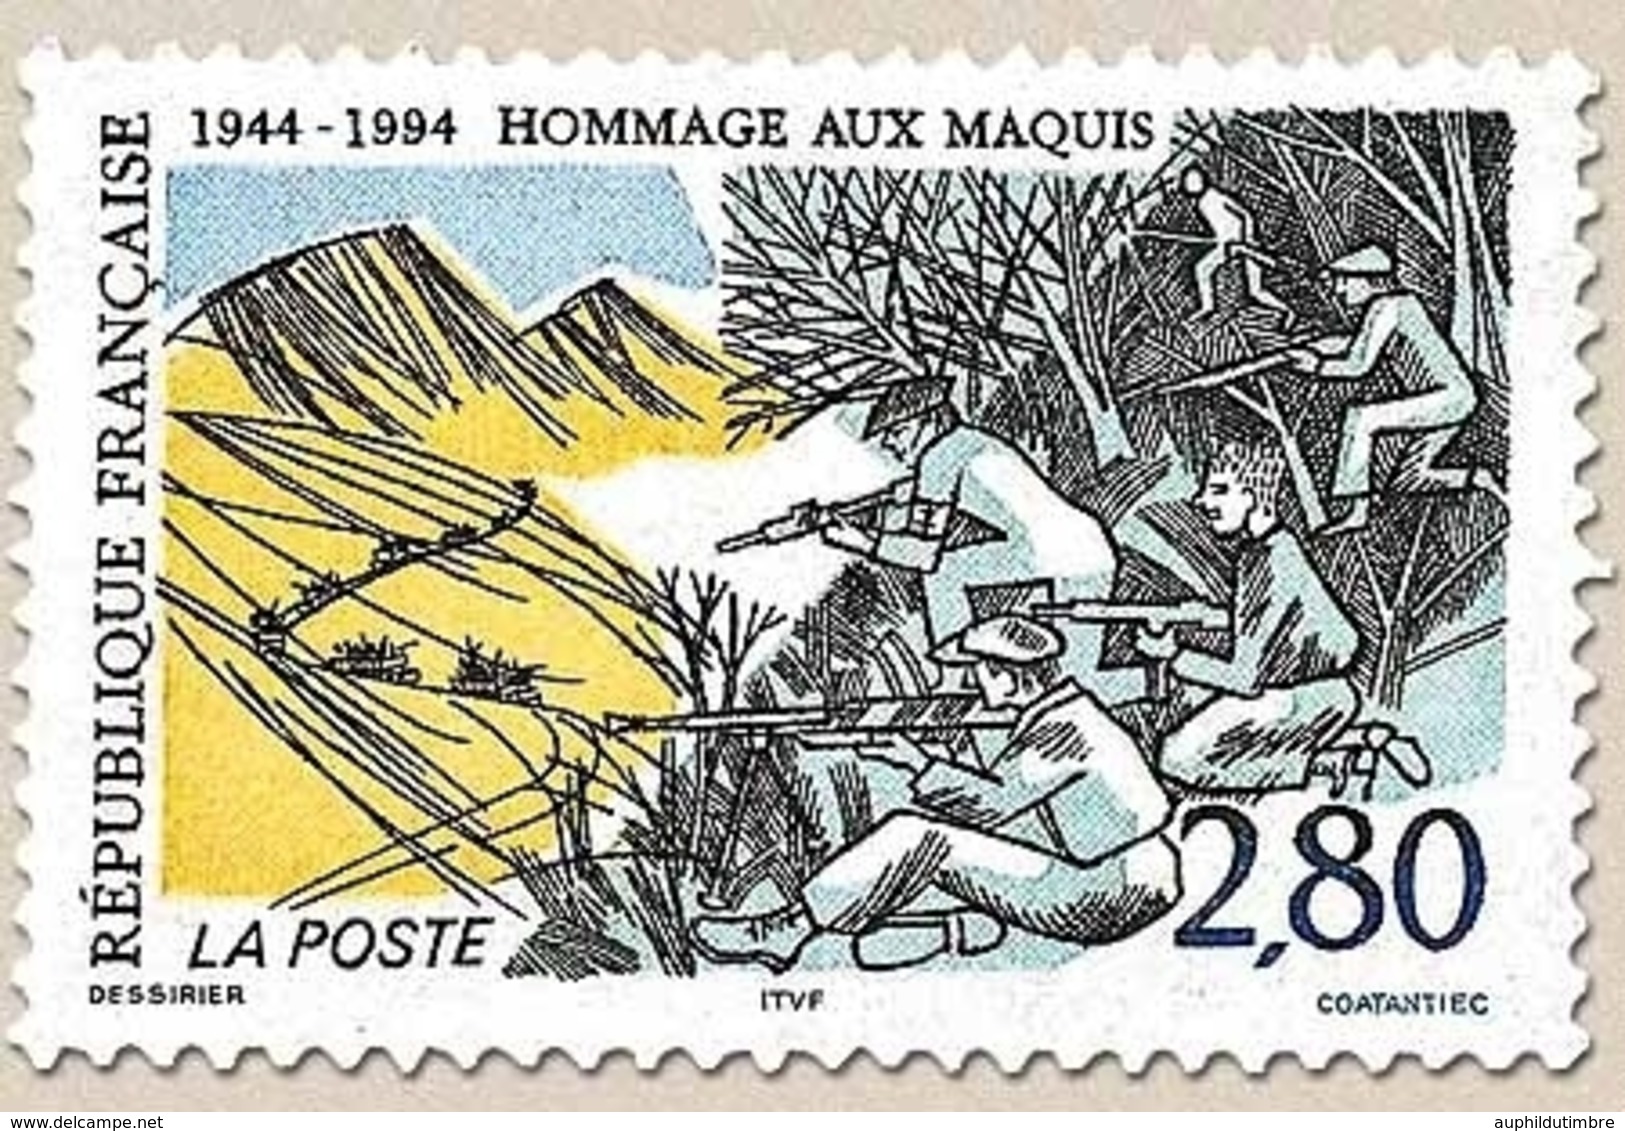 Hommage Aux Maquis. Maquisards En Embuscade, Et Convoi Ennemi  2f.80 Noir, Vert, Jaune Et Bleu Y2876 - Unused Stamps